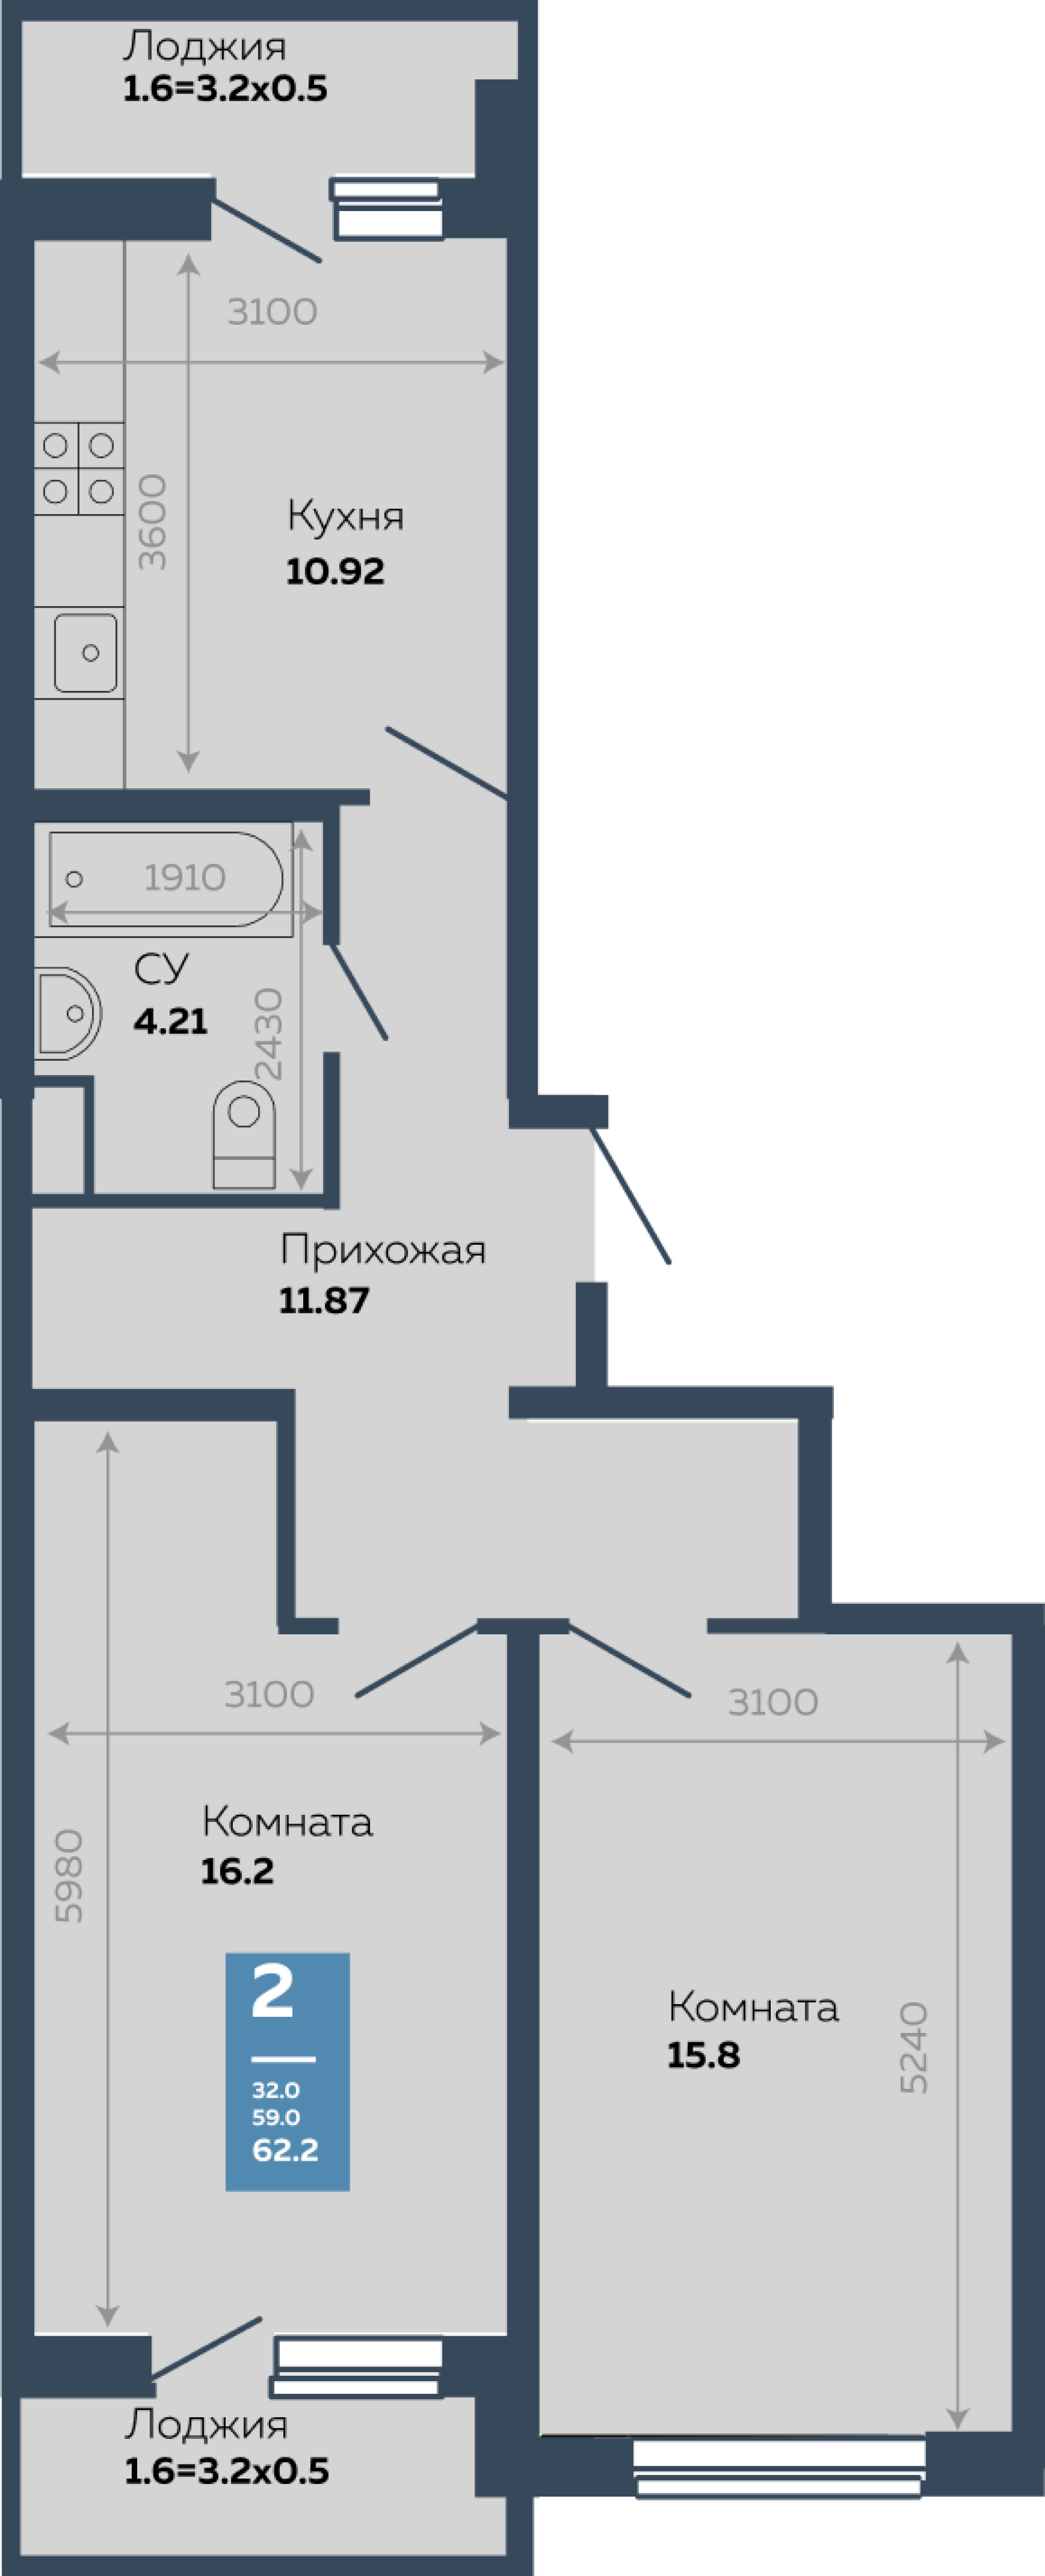 Недвижимость в жилом комплексе Литер 5.1 2-комнатная квартира